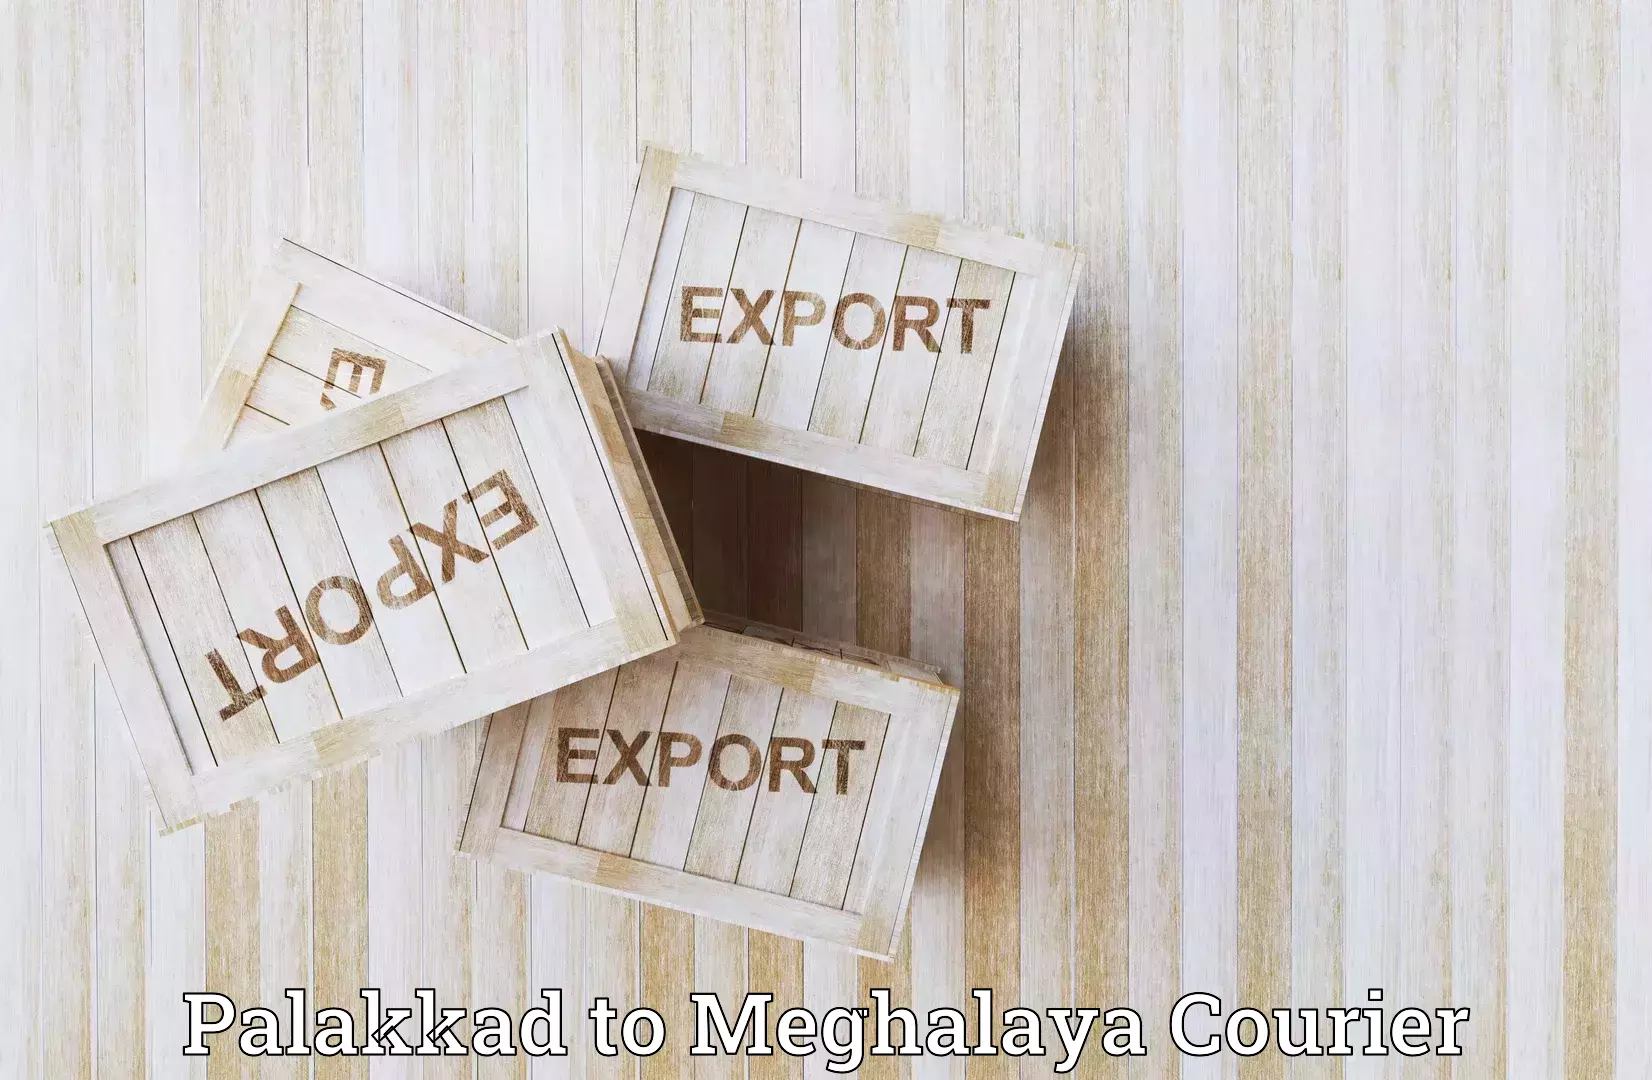 Flexible shipping options Palakkad to Meghalaya